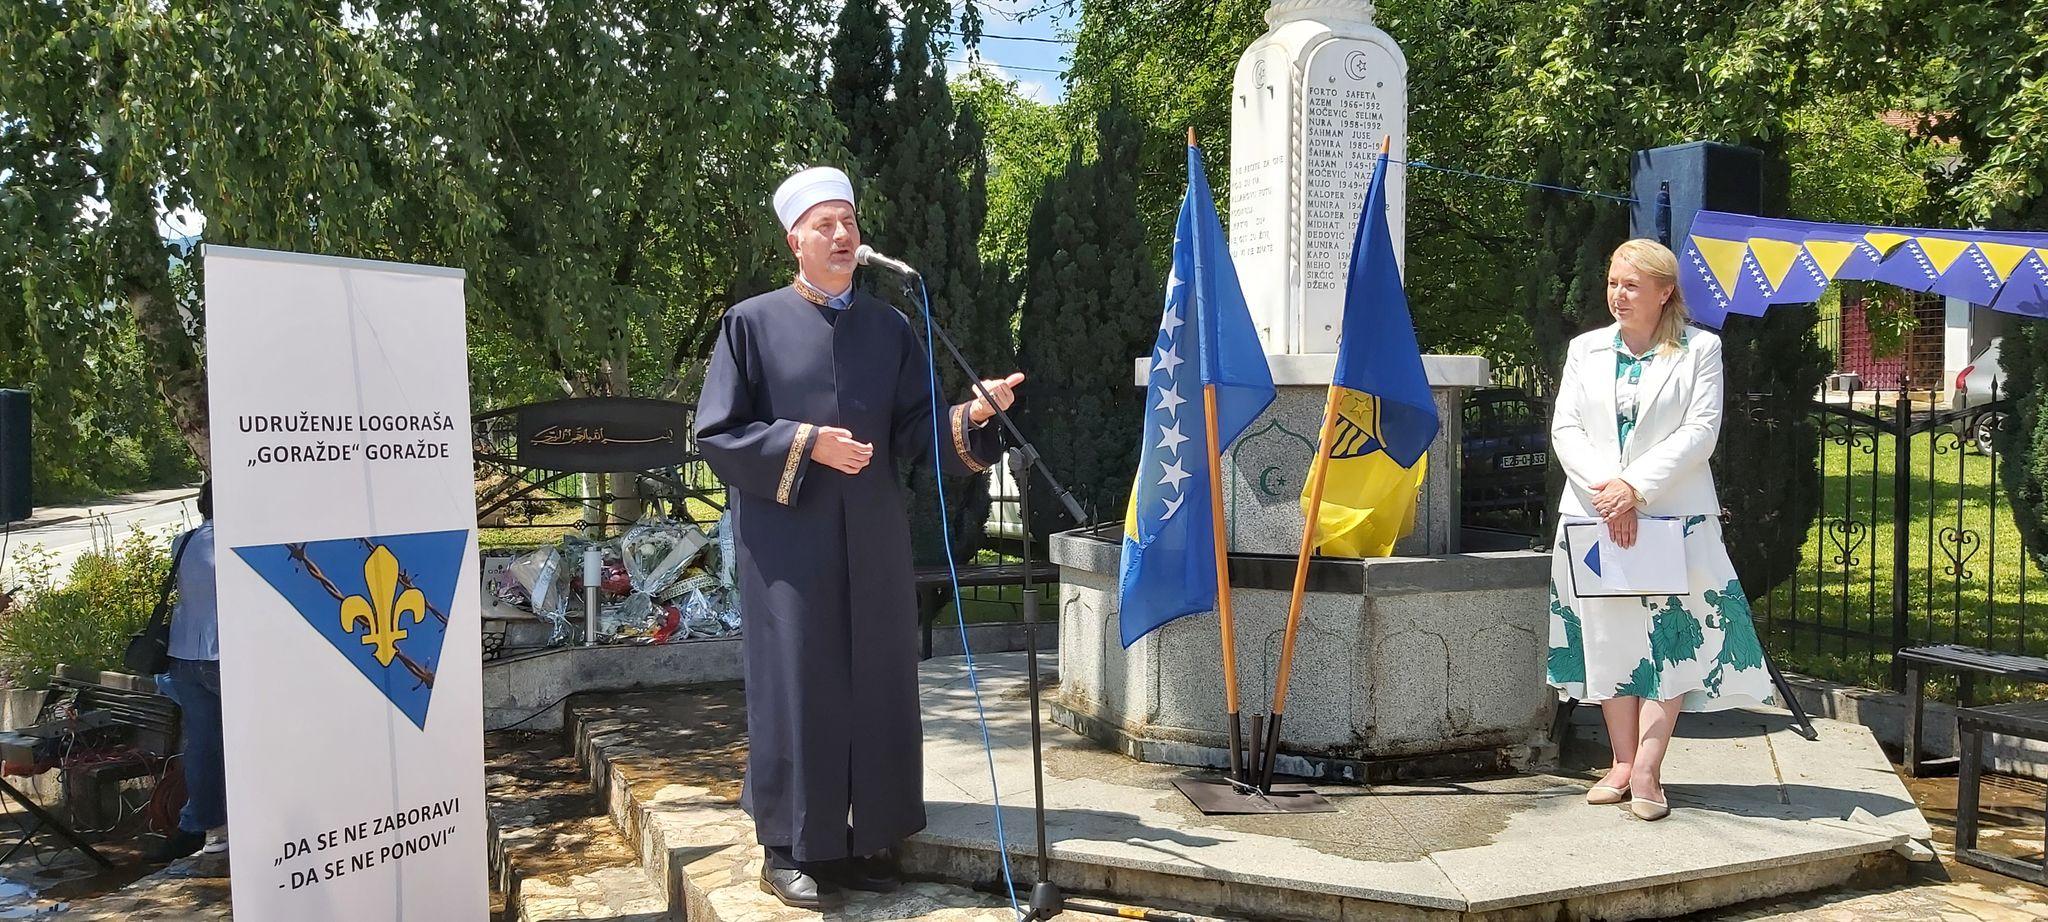 Goraždanski muftija Remzija ef. Pitić - Avaz